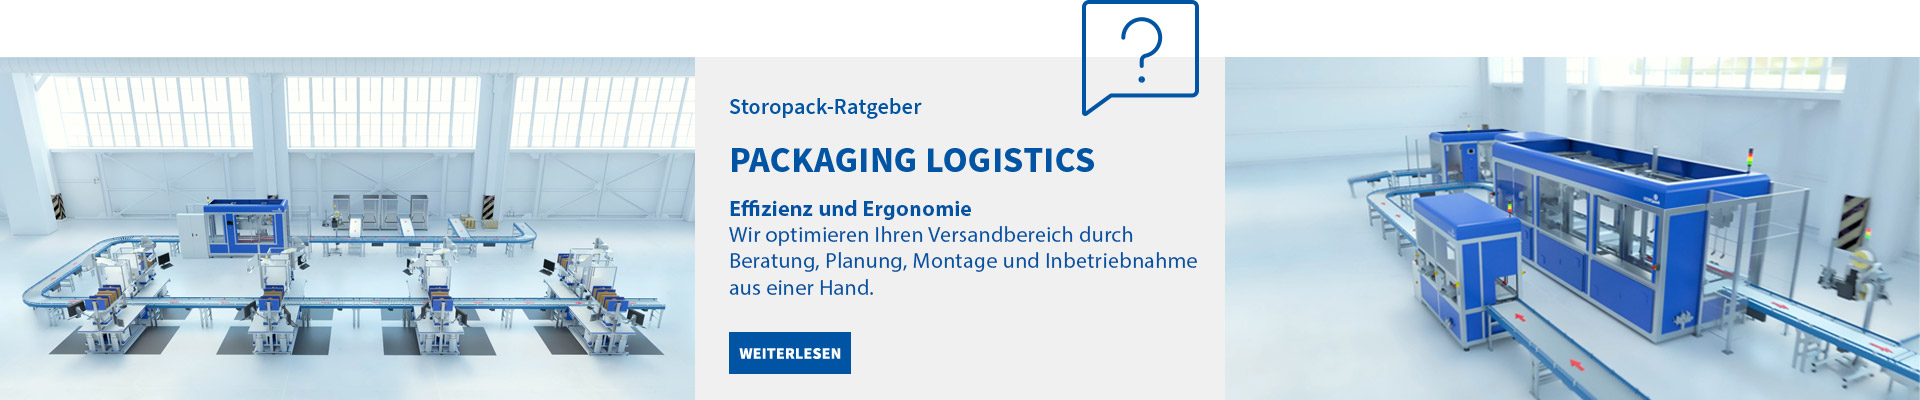 Der Storopack-Ratgeber: Packaging Logistics